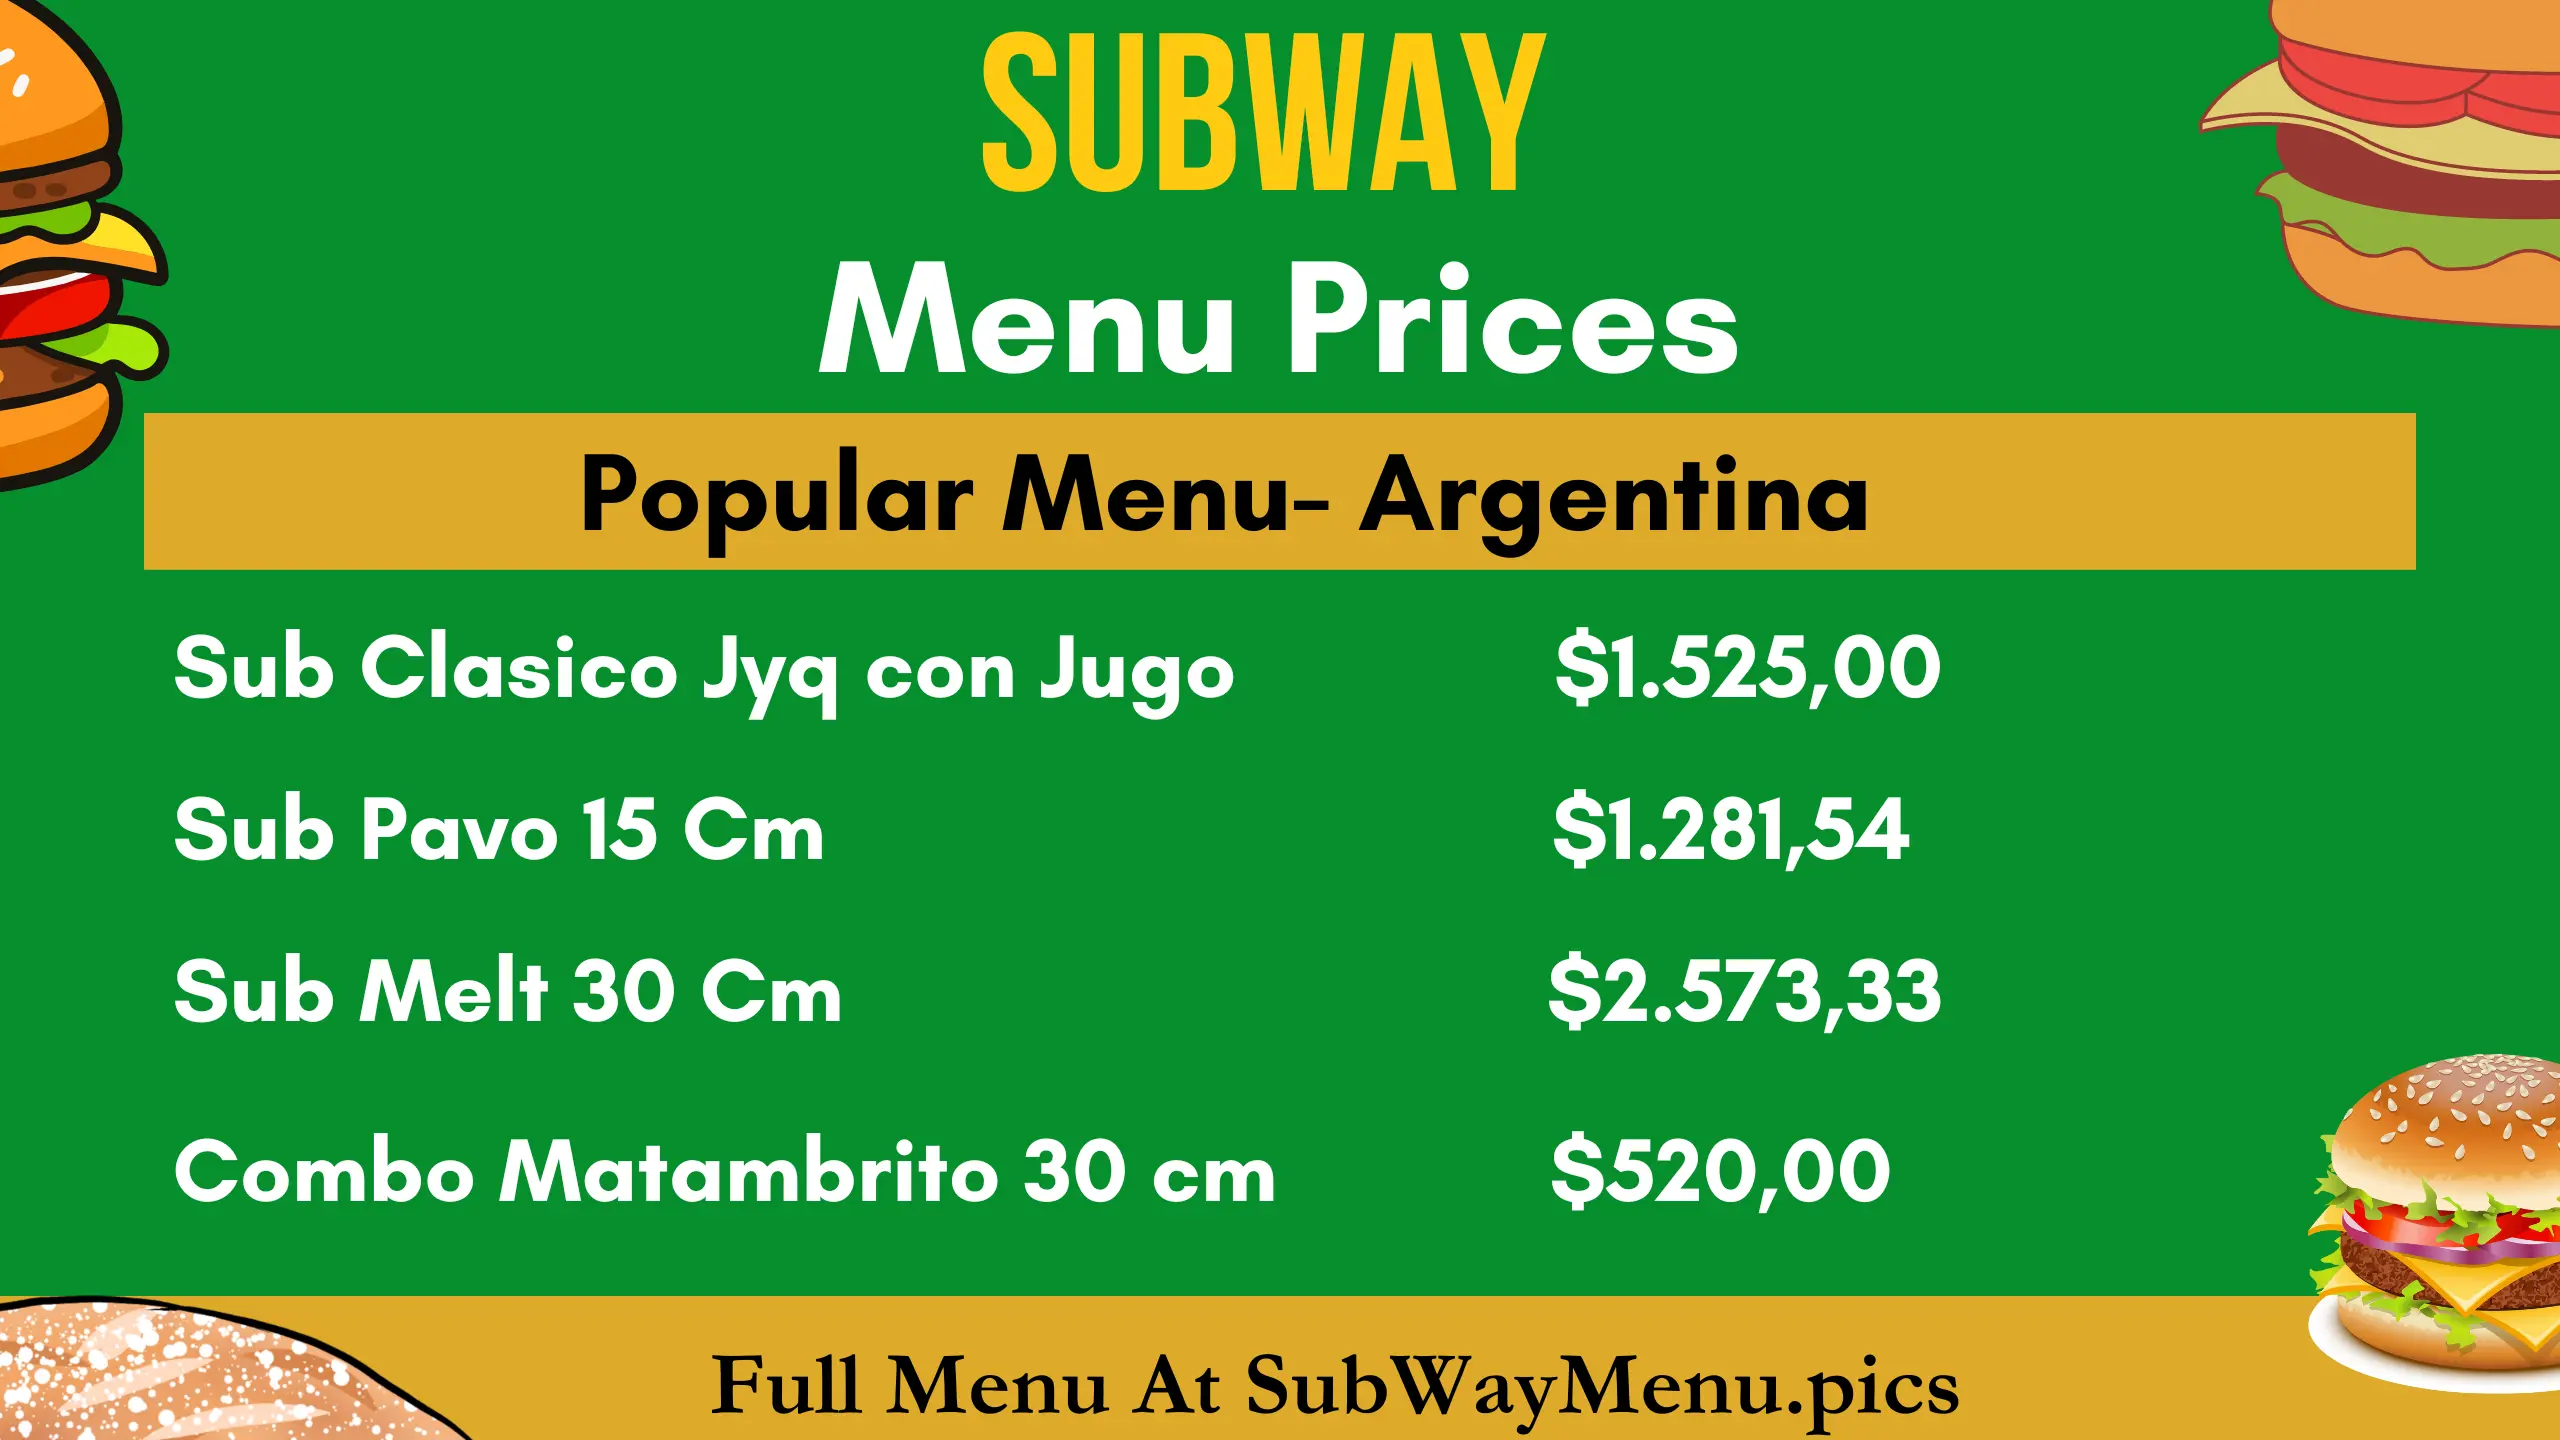 Subway Precios del Menú (AR)